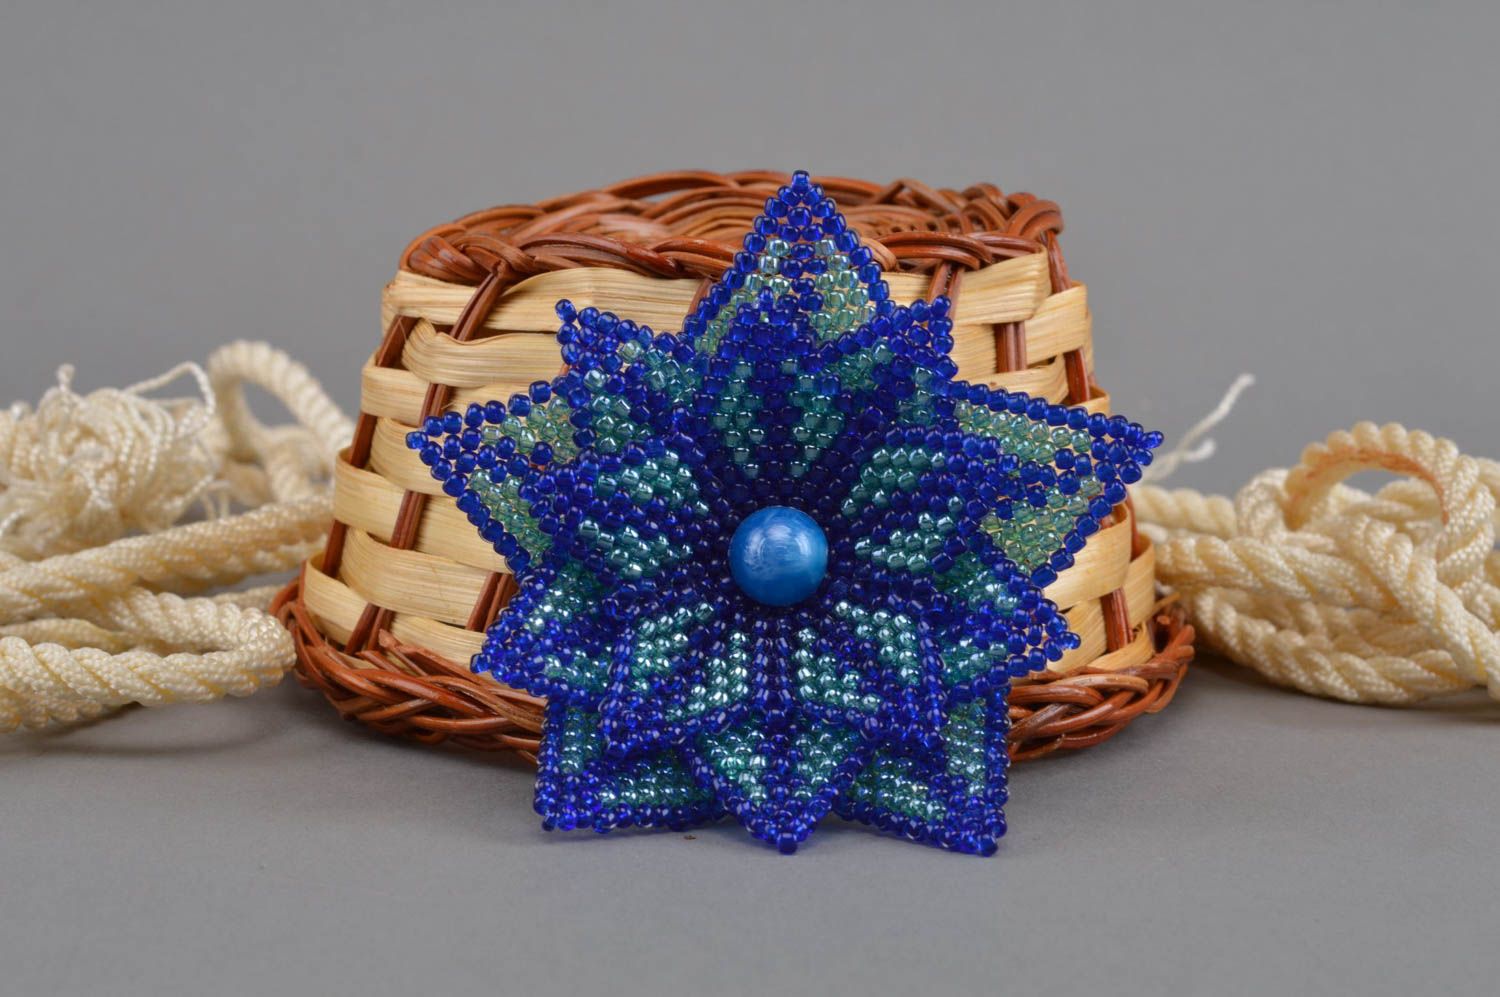 Blaue Blumen künstlerische Brosche aus Glasperlen einyigartig sch;n handmade foto 1